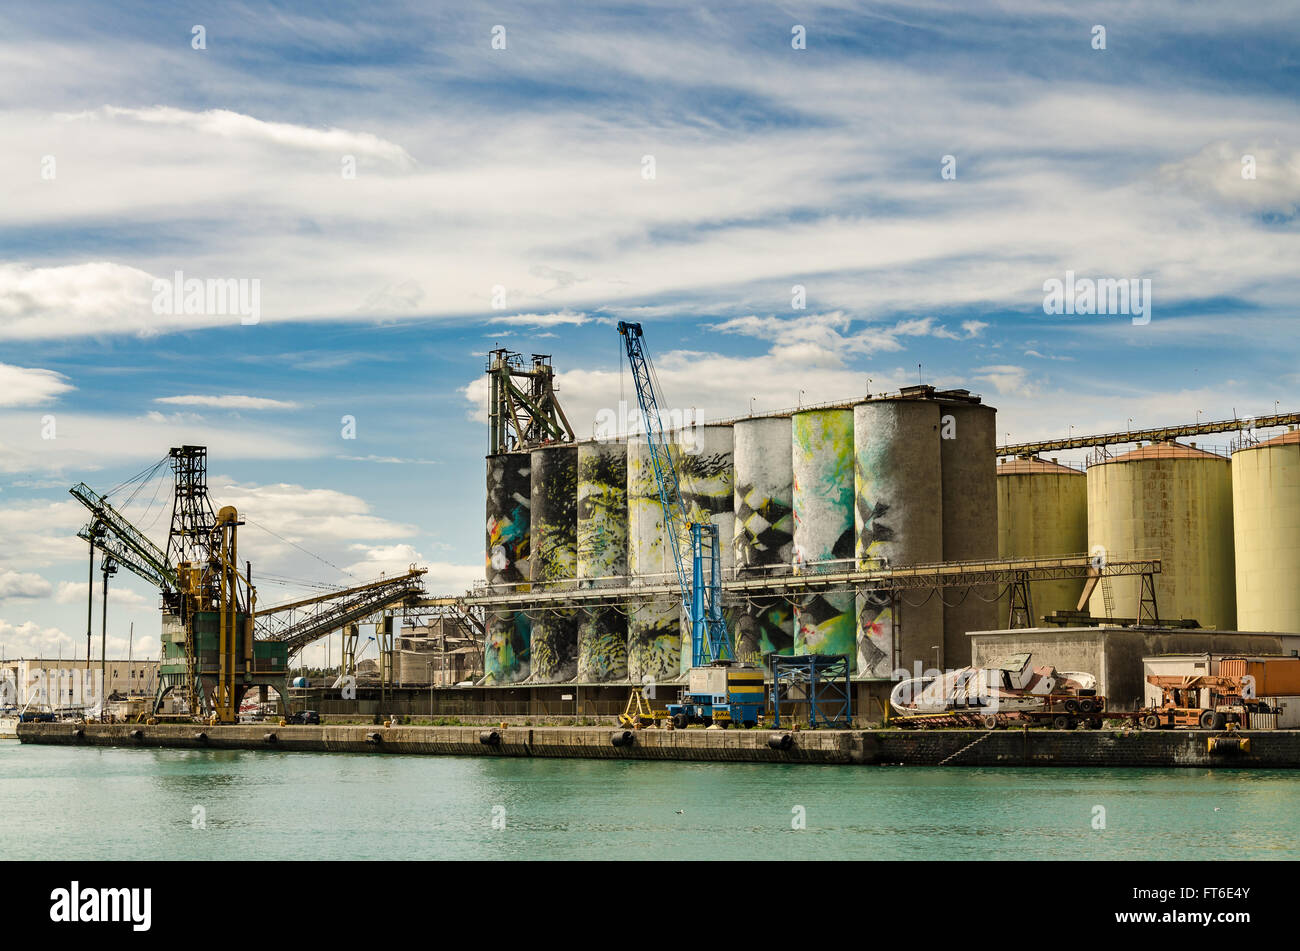 Grain Silos at Port Catania, Sicily - Italy. Stock Photo